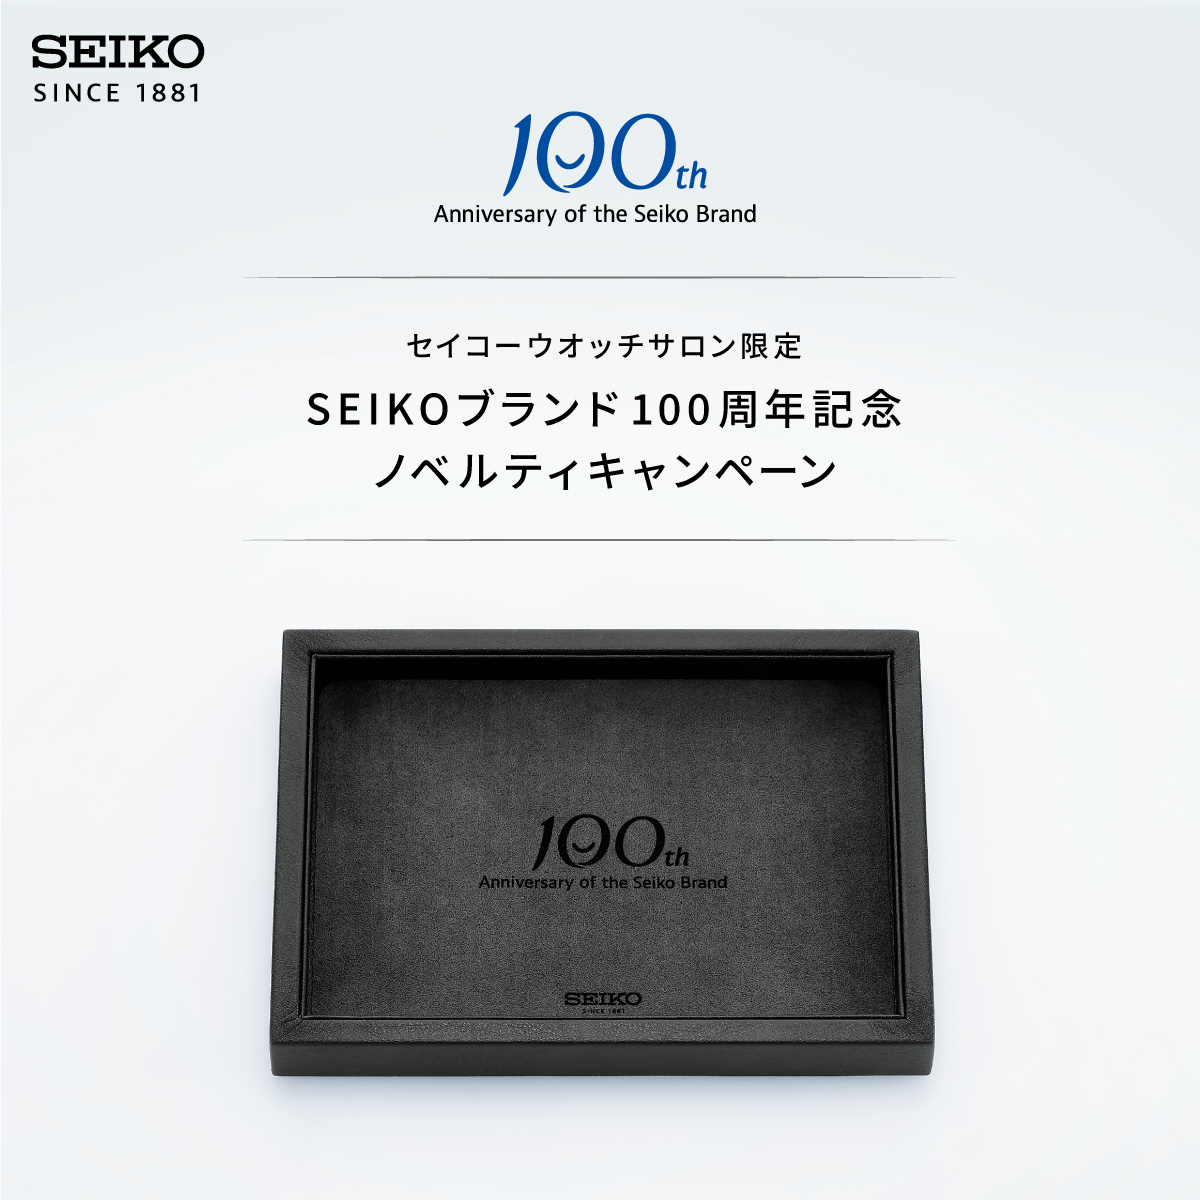 SEIKO100周年記念ノベルティキャンペーン